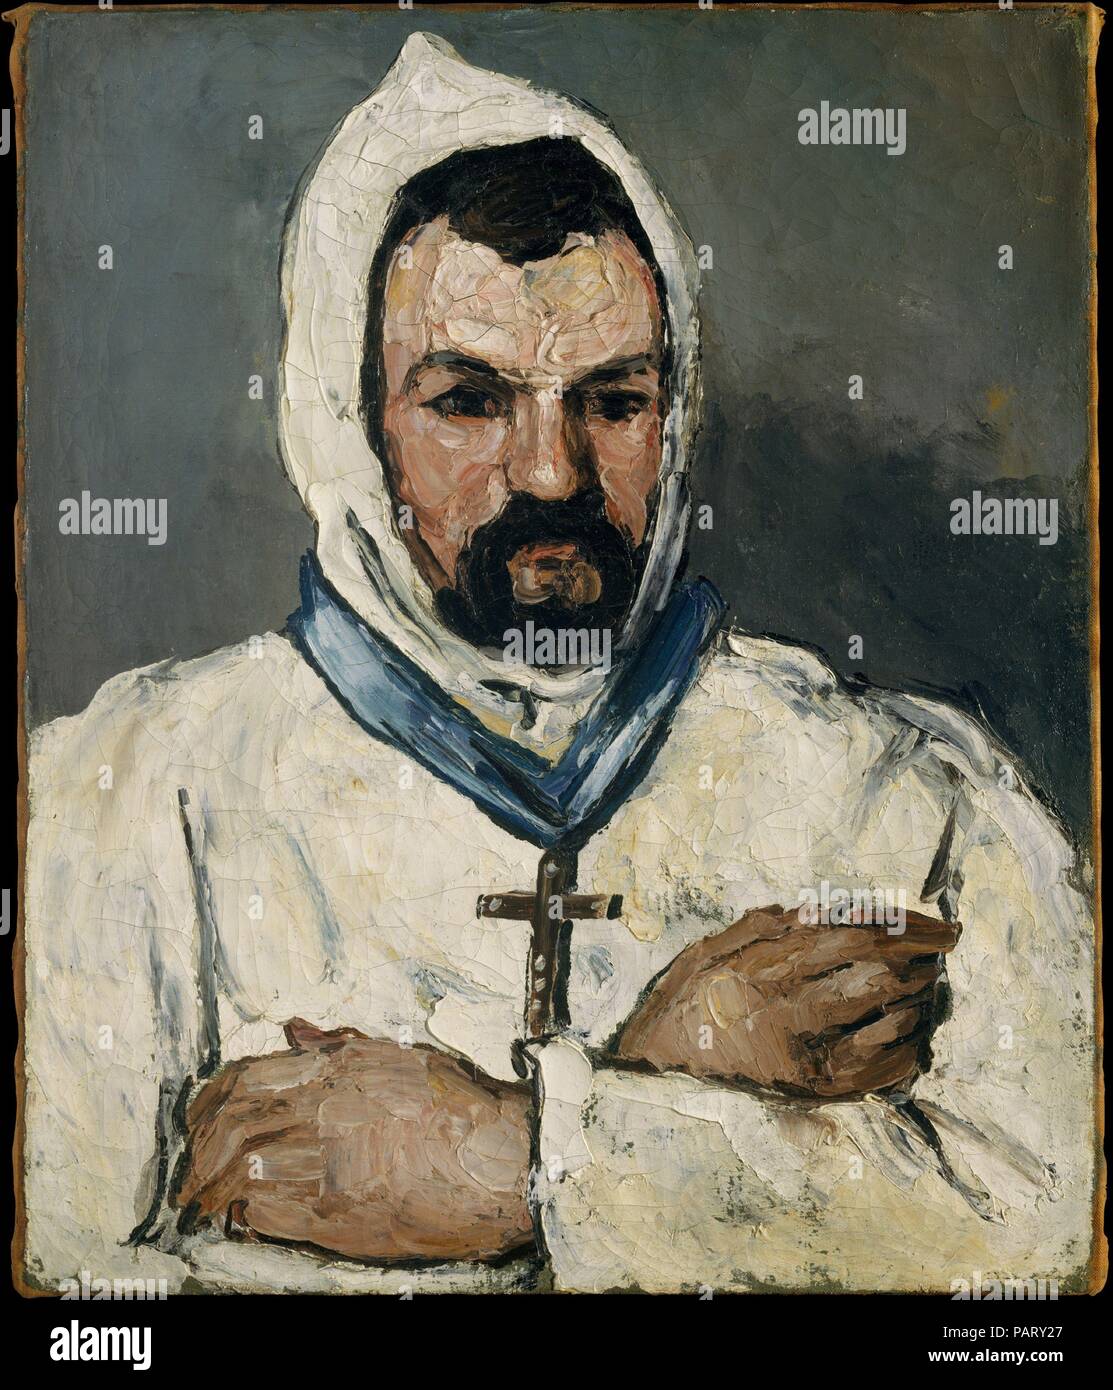 Antoine Dominique Sauveur Aubert (né en 1817), l'oncle de l'artiste, en tant que moine. Artiste : Paul Cézanne (Français, Aix-en-Provence 1839-1906 Aix-en-Provence). Dimensions : 25 5/8 x 21 1/2 in. (65,1 x 54,6 cm). Date : 1866. À l'automne 1866 Cézanne peint neuf portraits de son oncle maternel, Dominique Aubert. Les quarante-neuf ans, huissier se son neveu avec plusieurs séances et a accepté de poser dans divers costumes. Alors qu'il s'affiche ici l'habitude d'un moine dominicain, dans une autre ressemblance (53,140.1) il porte une robe et chapeau de pampilles. Au milieu des années 1860, le jeune Cézanne peinture d'épaisseur Banque D'Images